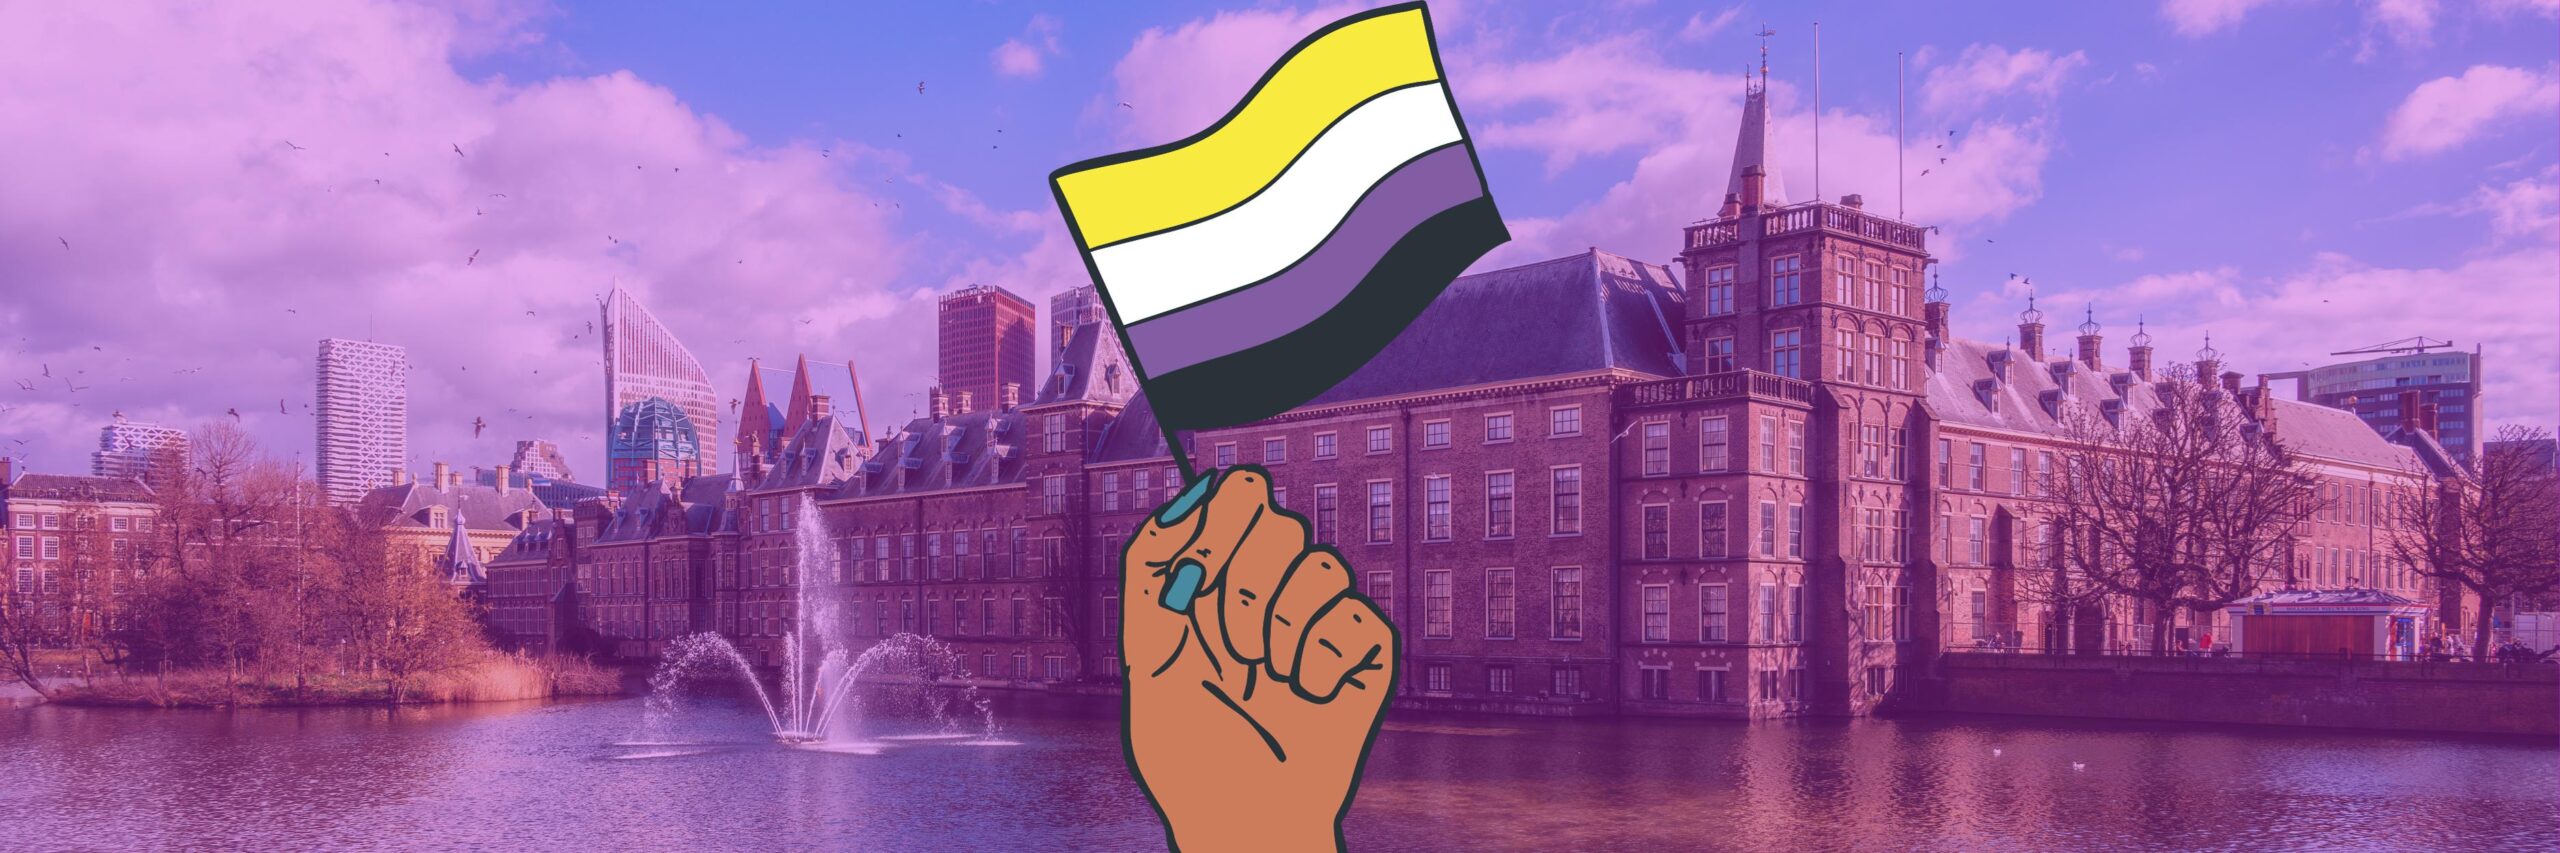 Hand met non-binary pride vlag voor Hofvijver in Den Haag